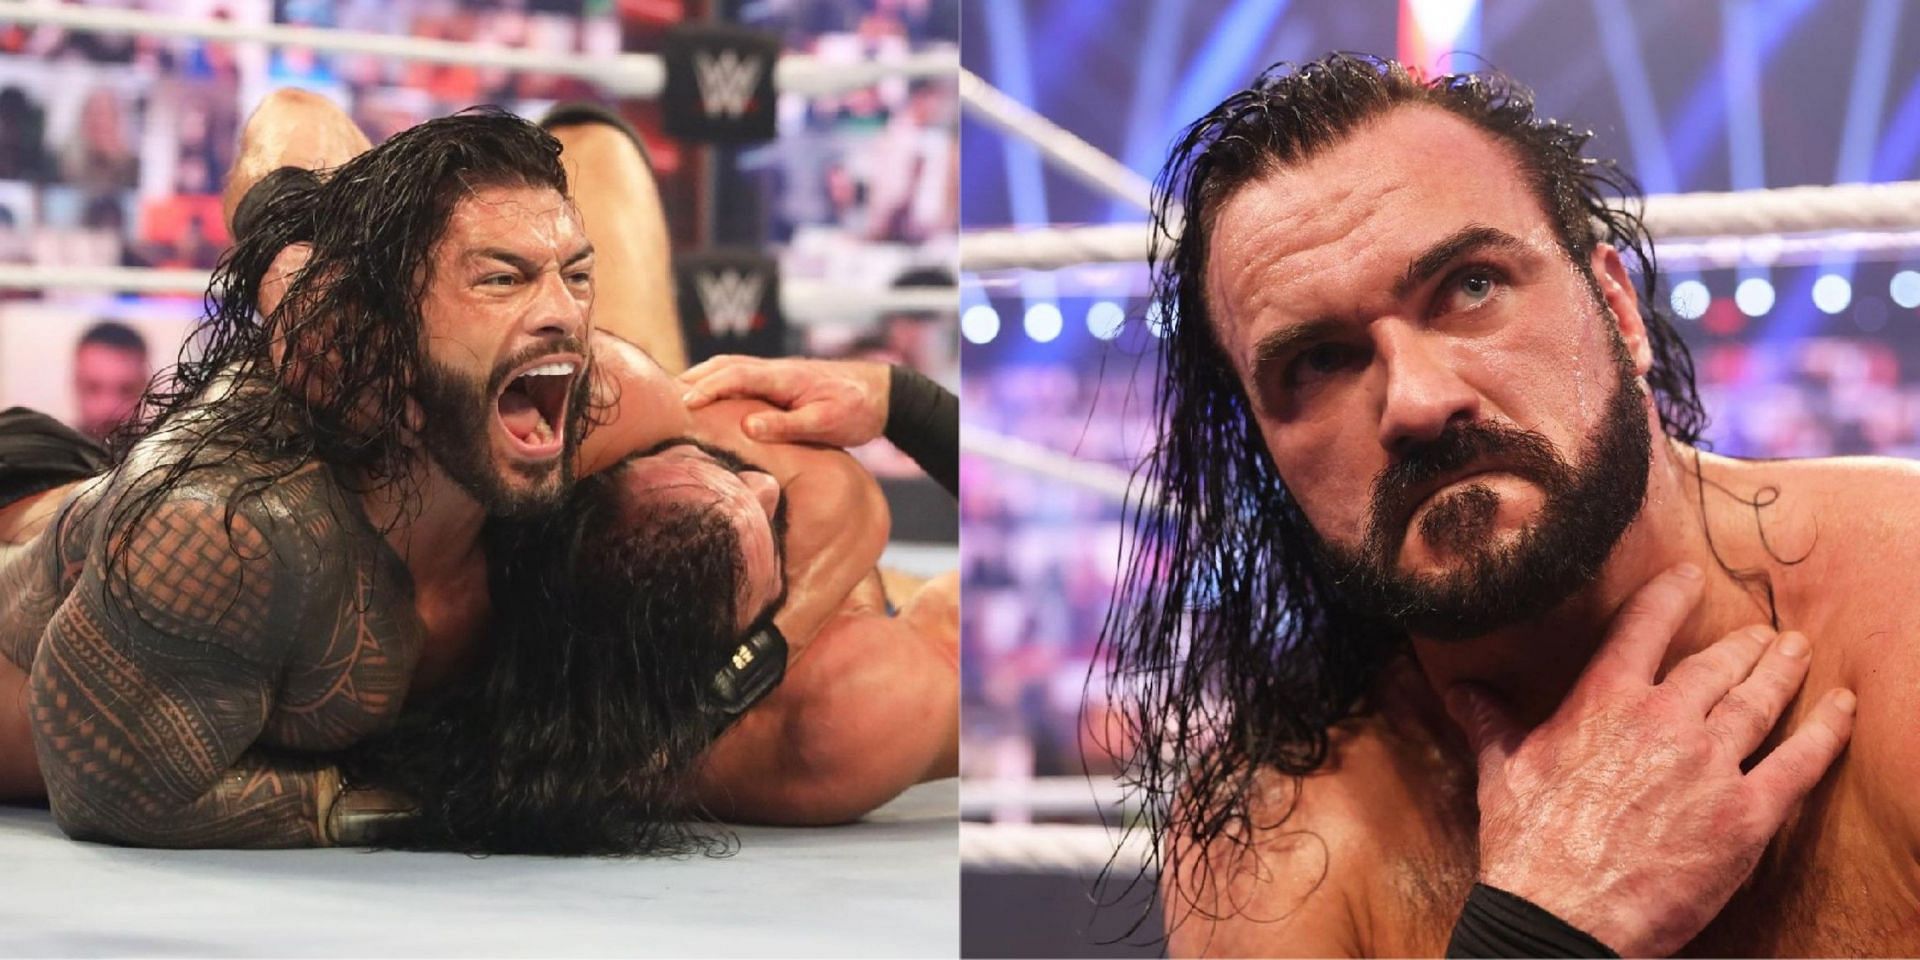 WWE Survivor Series में रोमन रेंस और ड्रू मैकइंटायर का चैंपियन vs चैंपियन मैच हुआ था